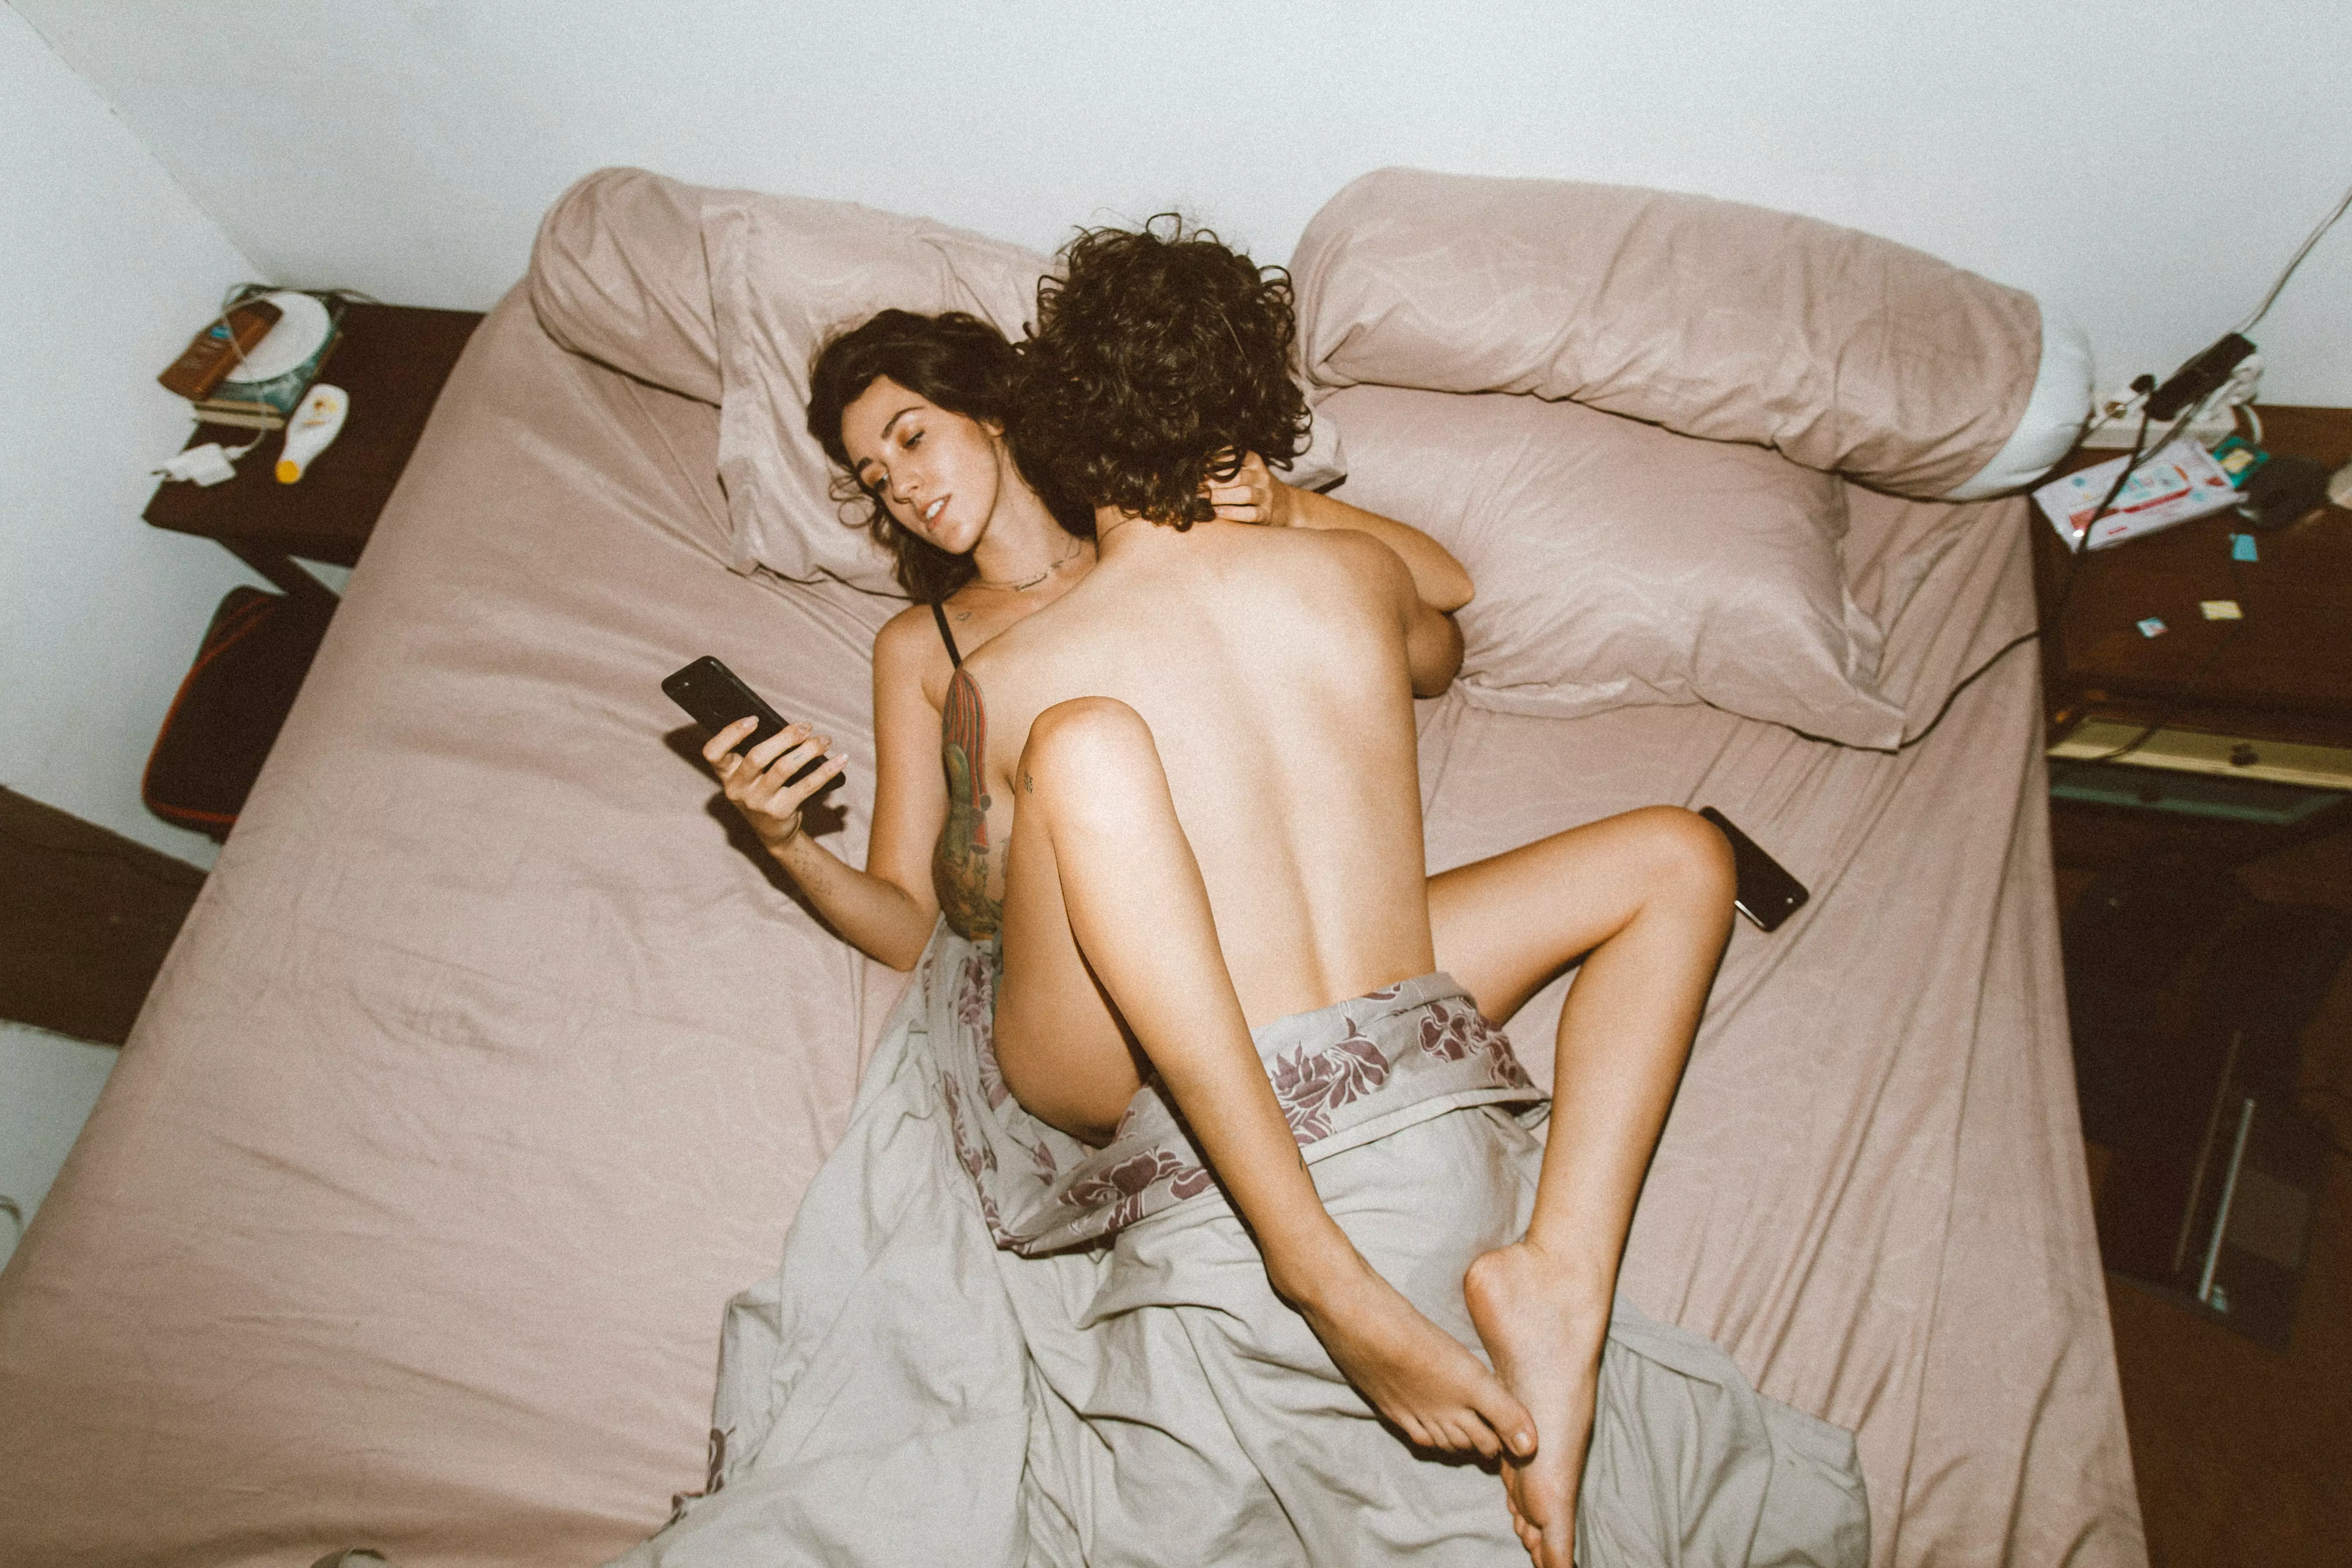 Как разместить свои интимные фотографии анонимно и безопасно